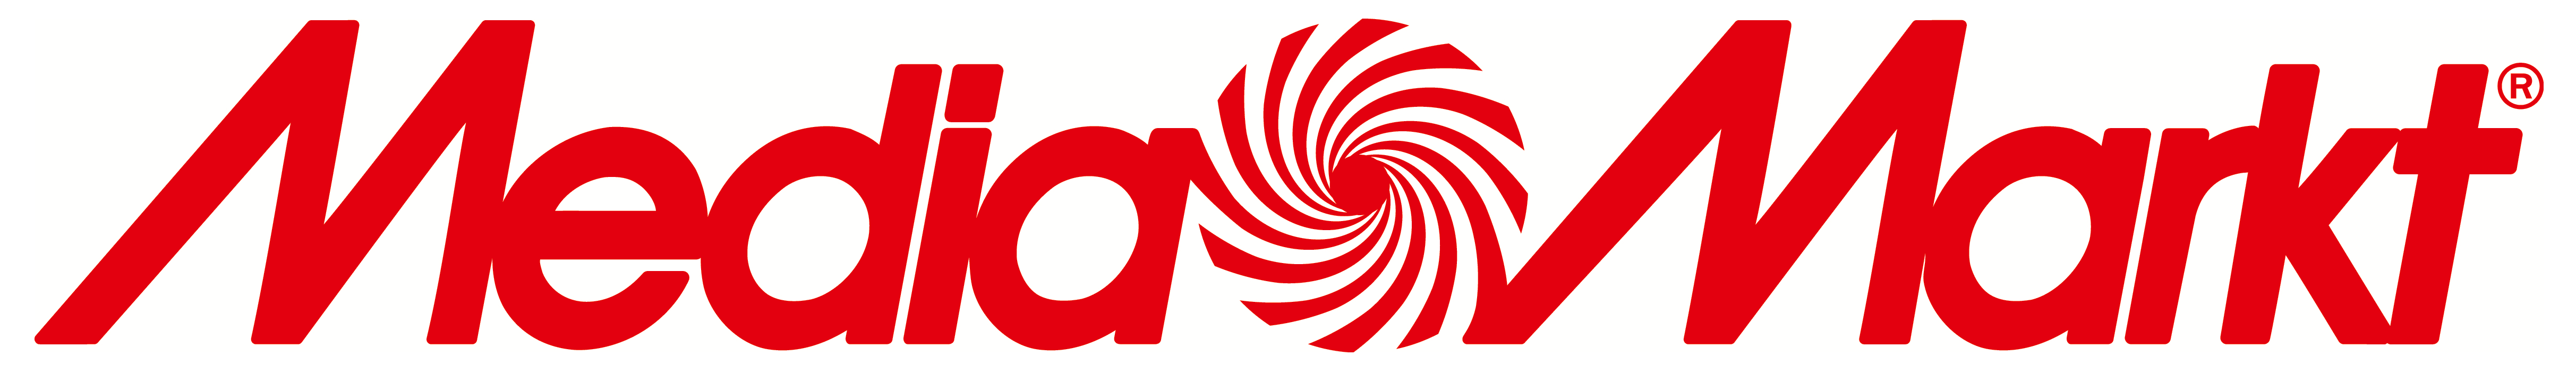 Media Markt Logo PNG - 178391